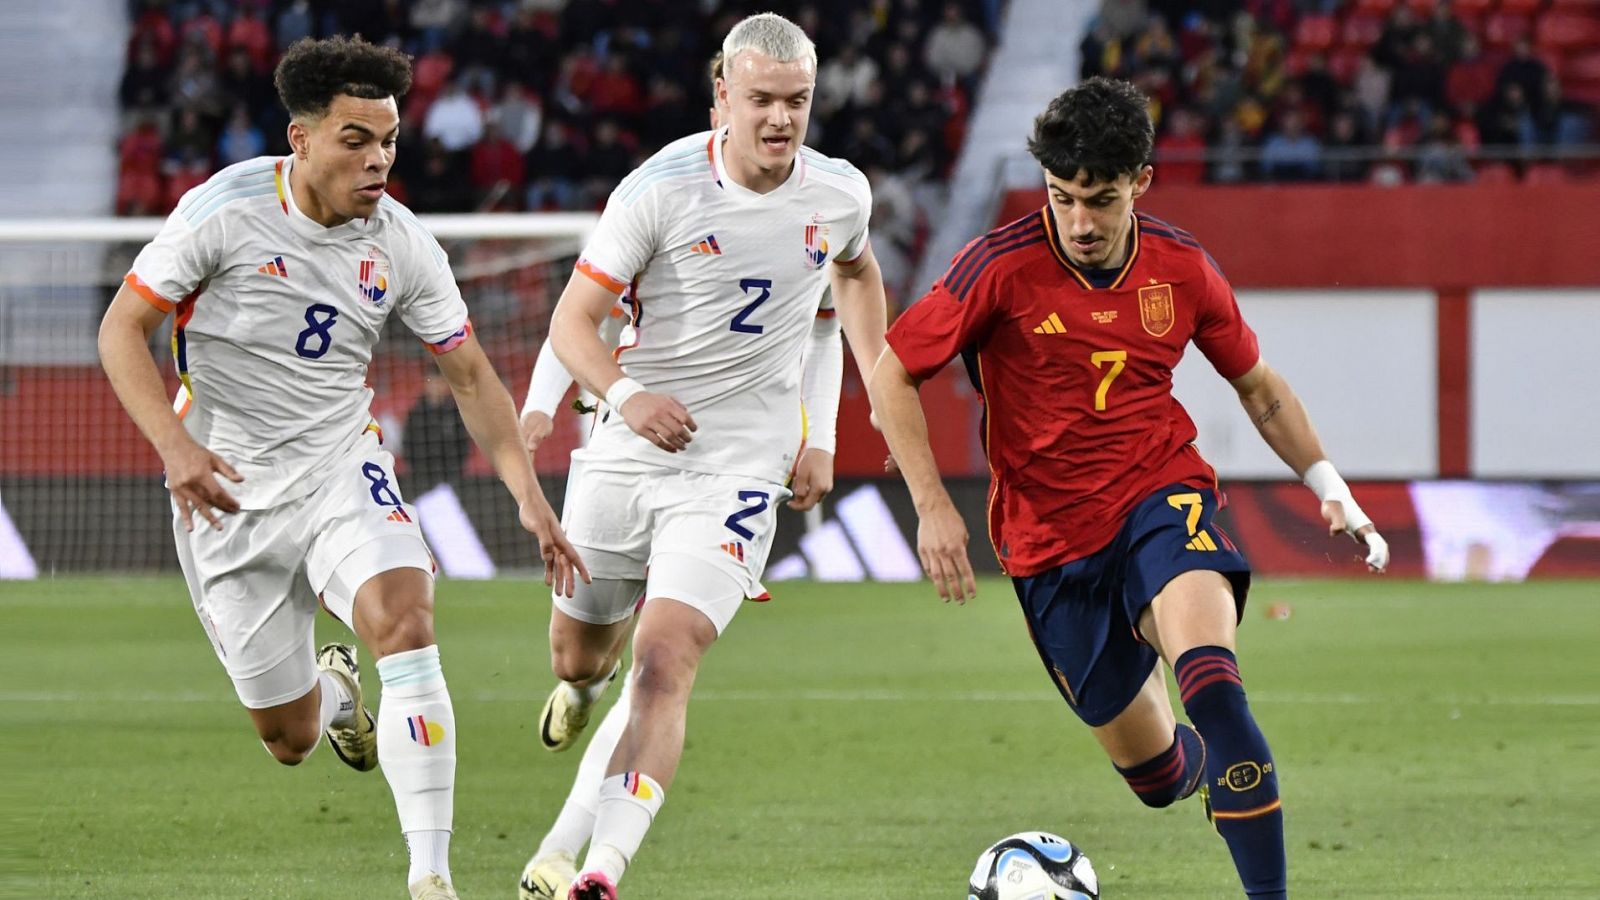 Fútbol - Clasificación Campeonato de Europa Selección Sub-21: España - Bélgica